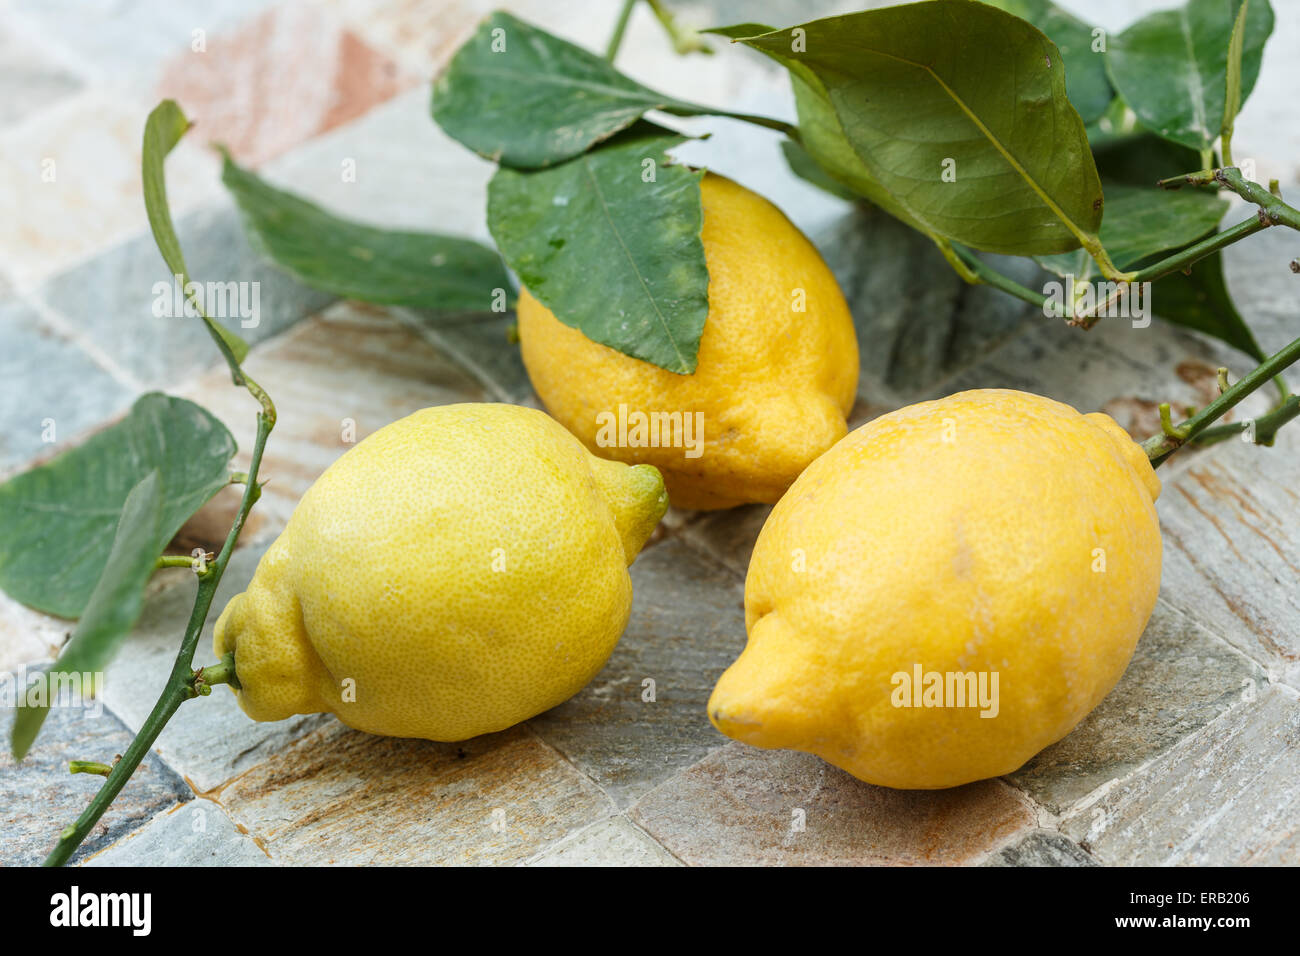 Citrons biologiques de la côte d'Amalfi (Italie) Banque D'Images